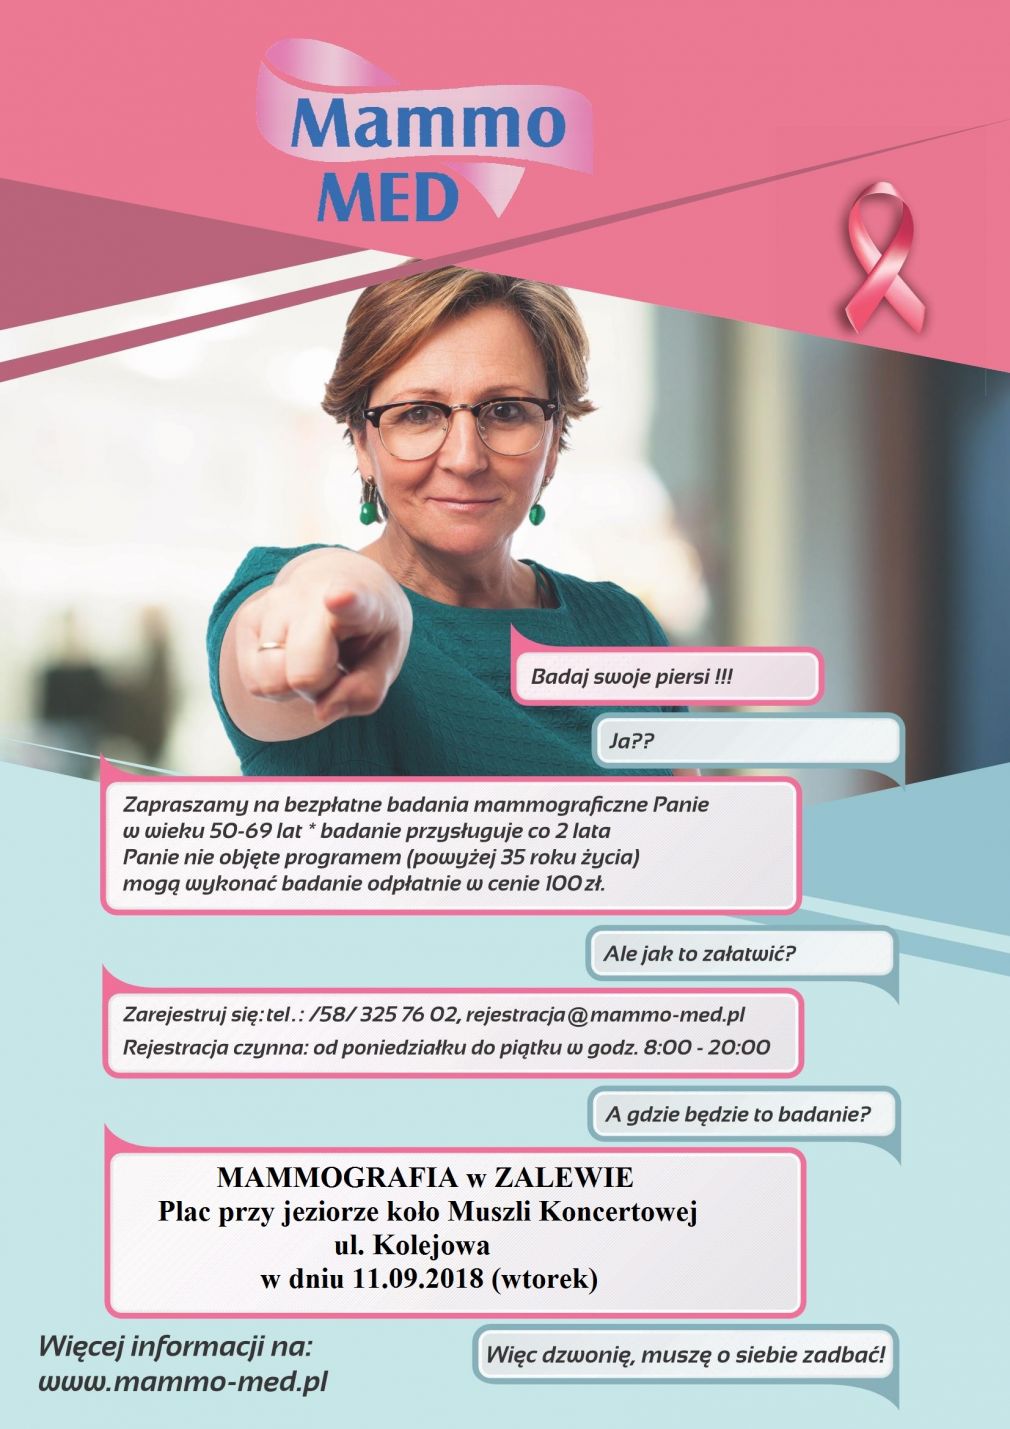 Mammografia w Zalewie